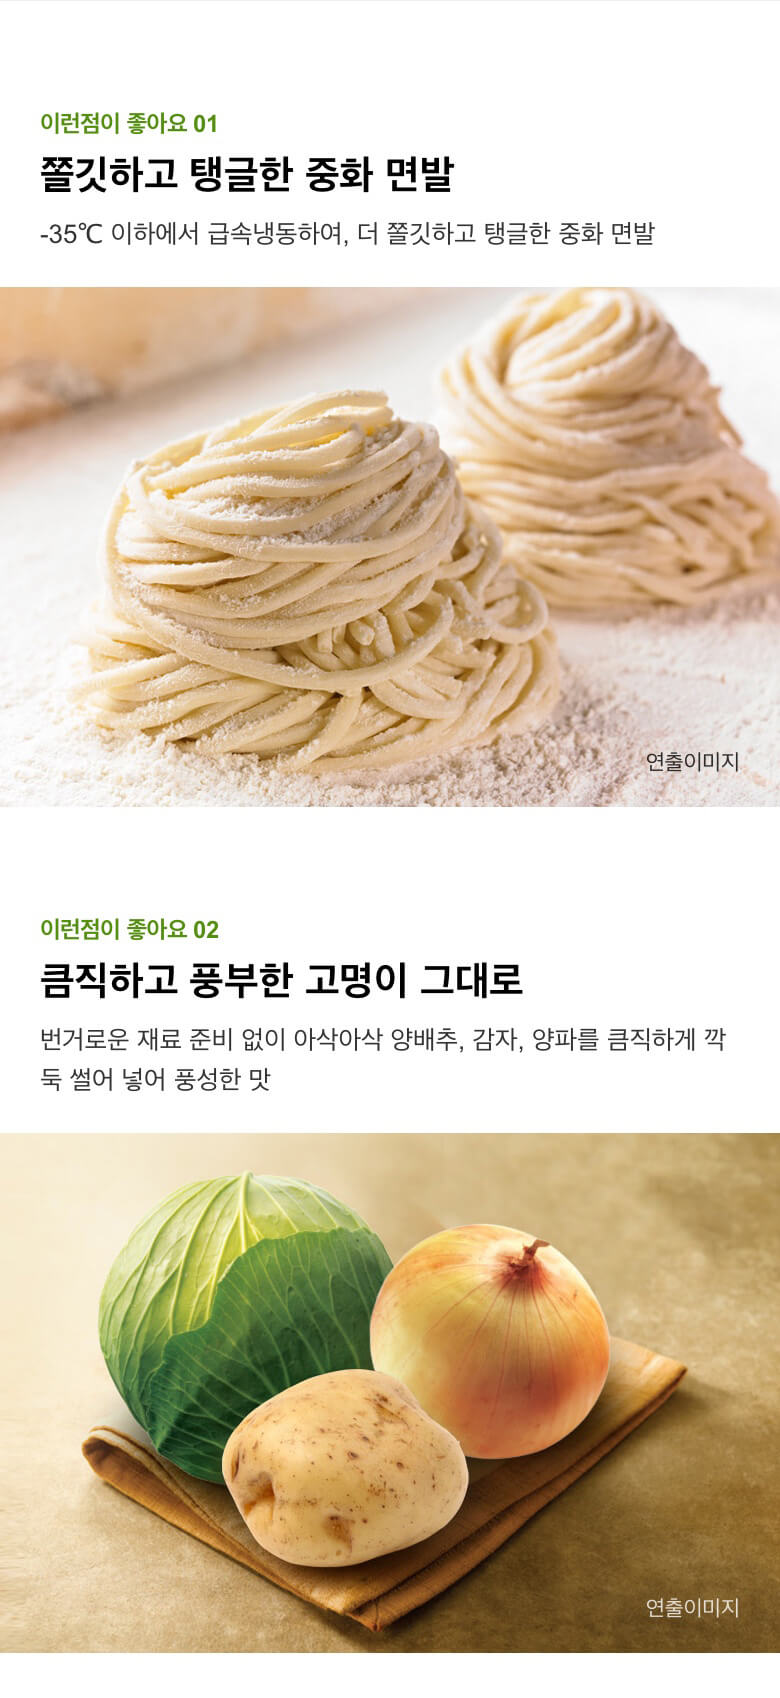 韓國食品-[CJ] 고메중화짜장면 760g